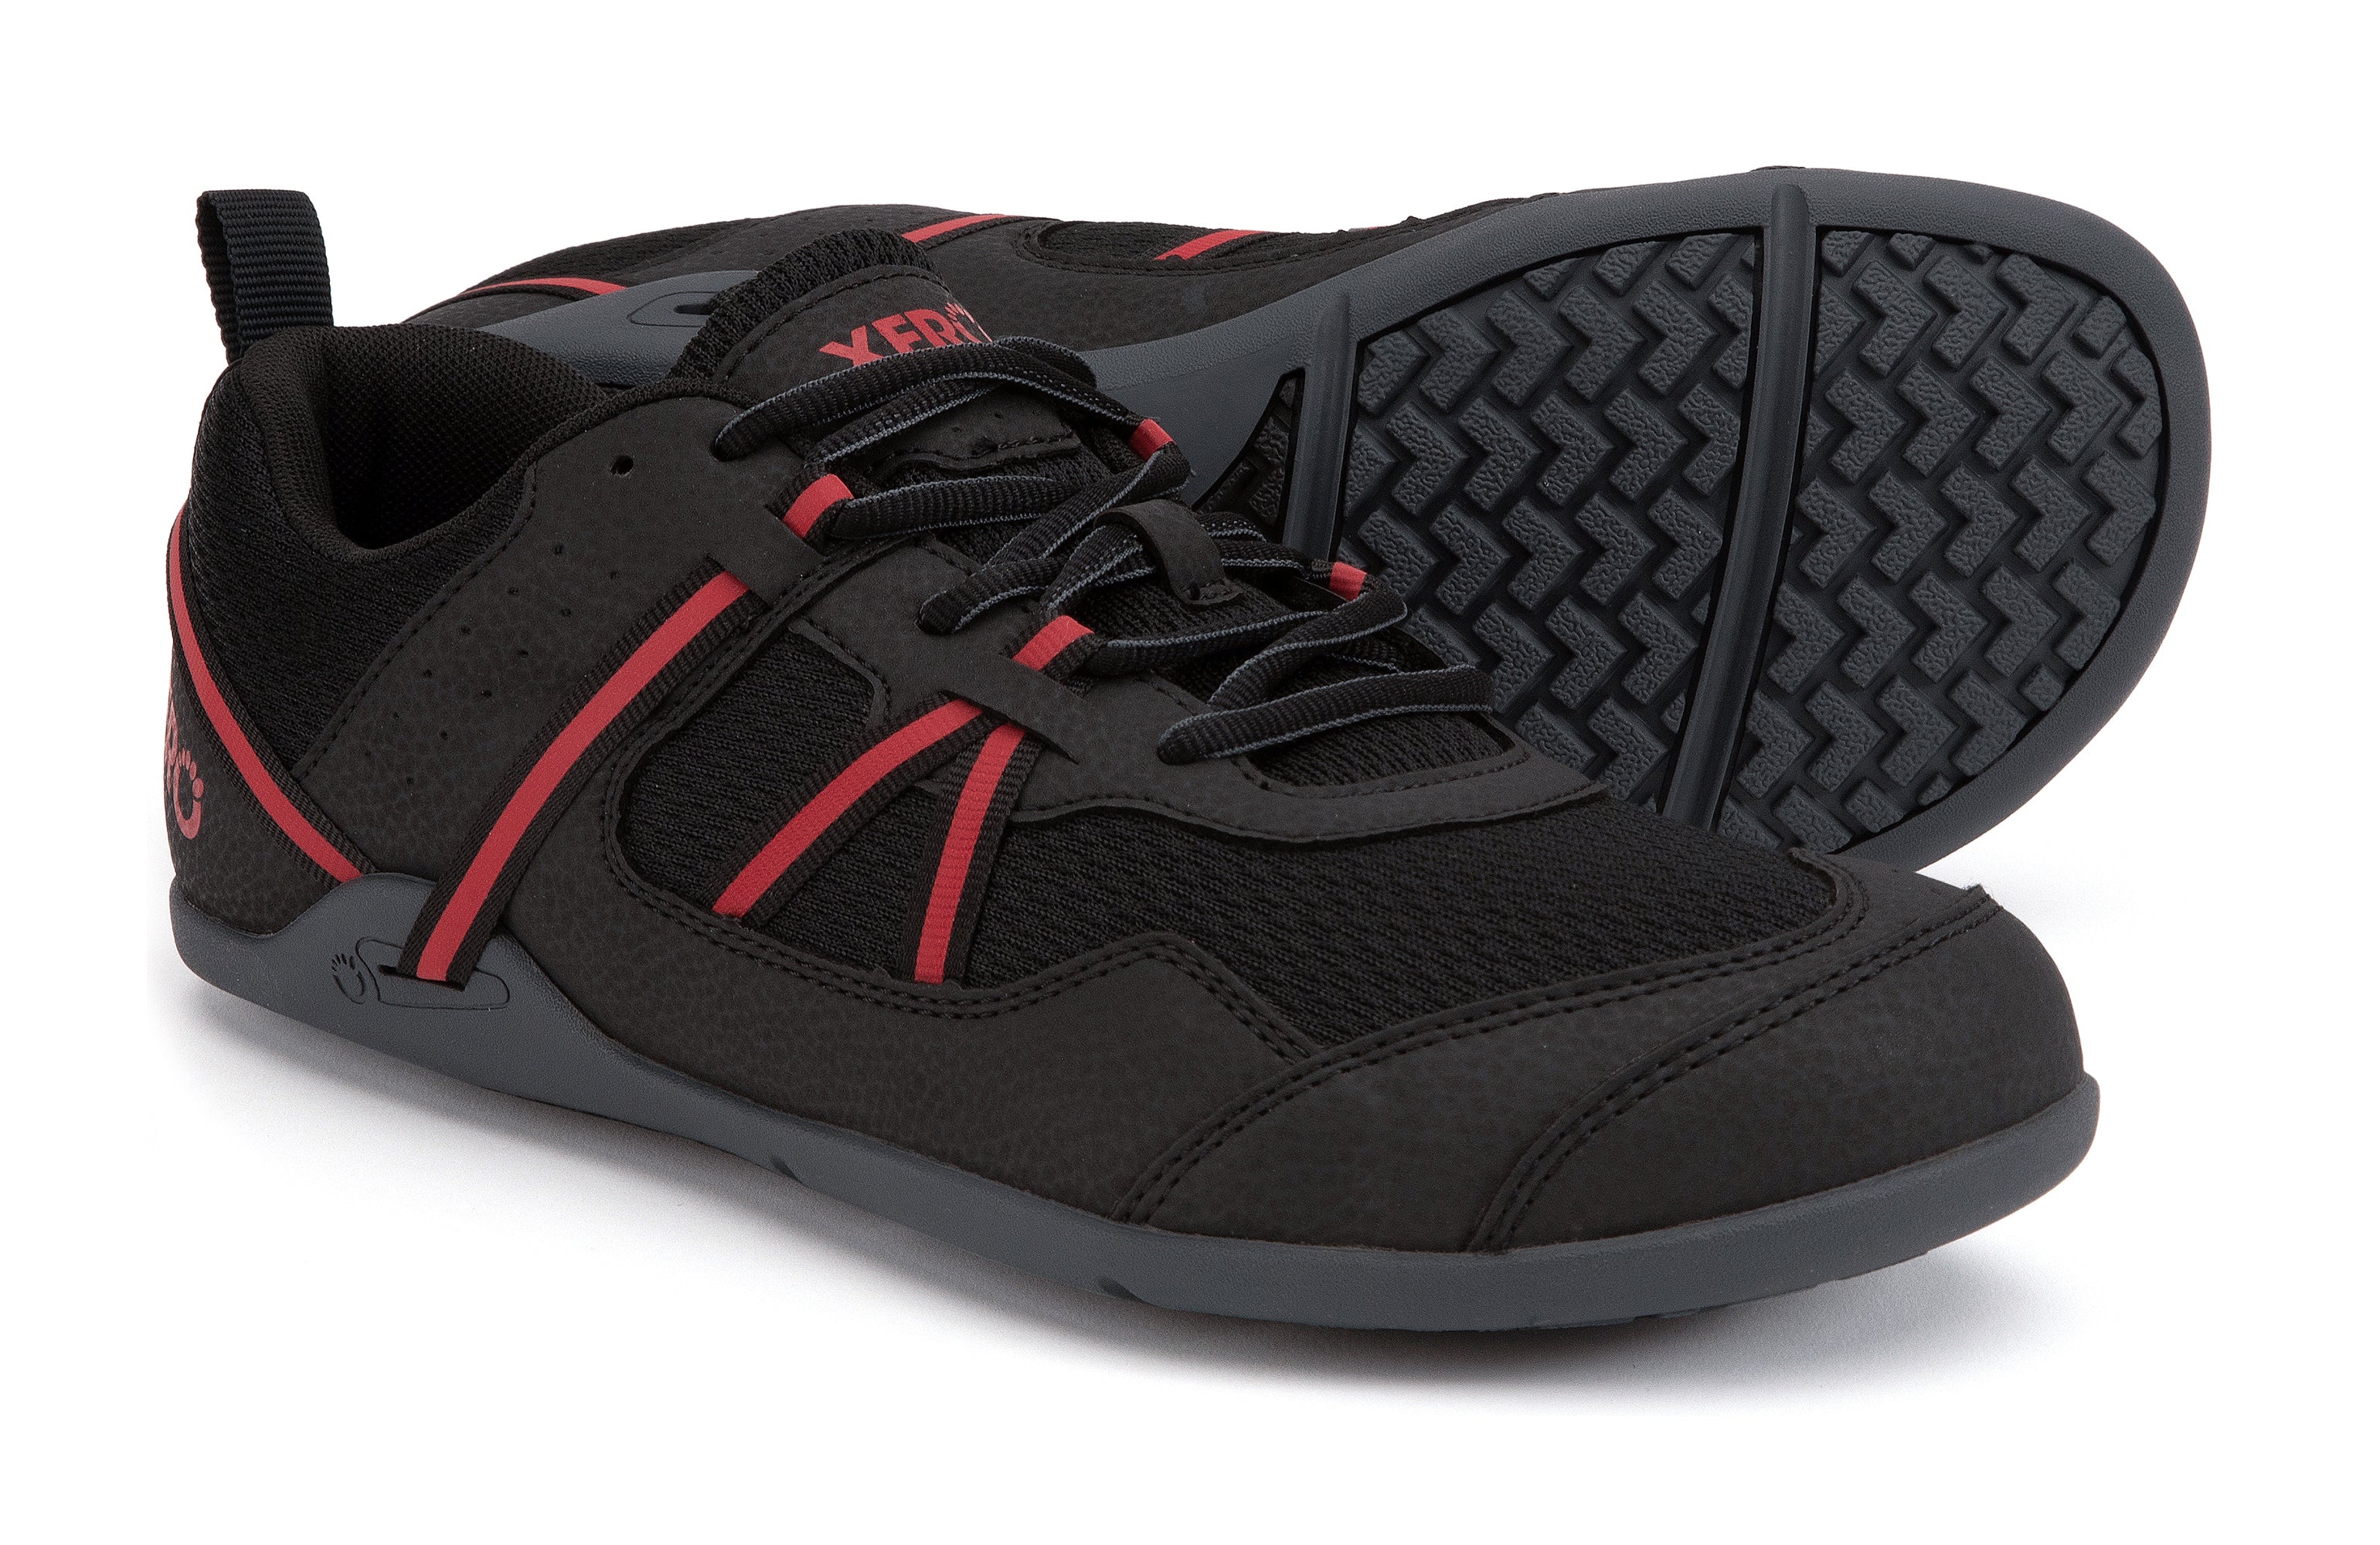 Xero Shoes Prio barfods løbesko/træningssko til mænd i farven black / samba red, par